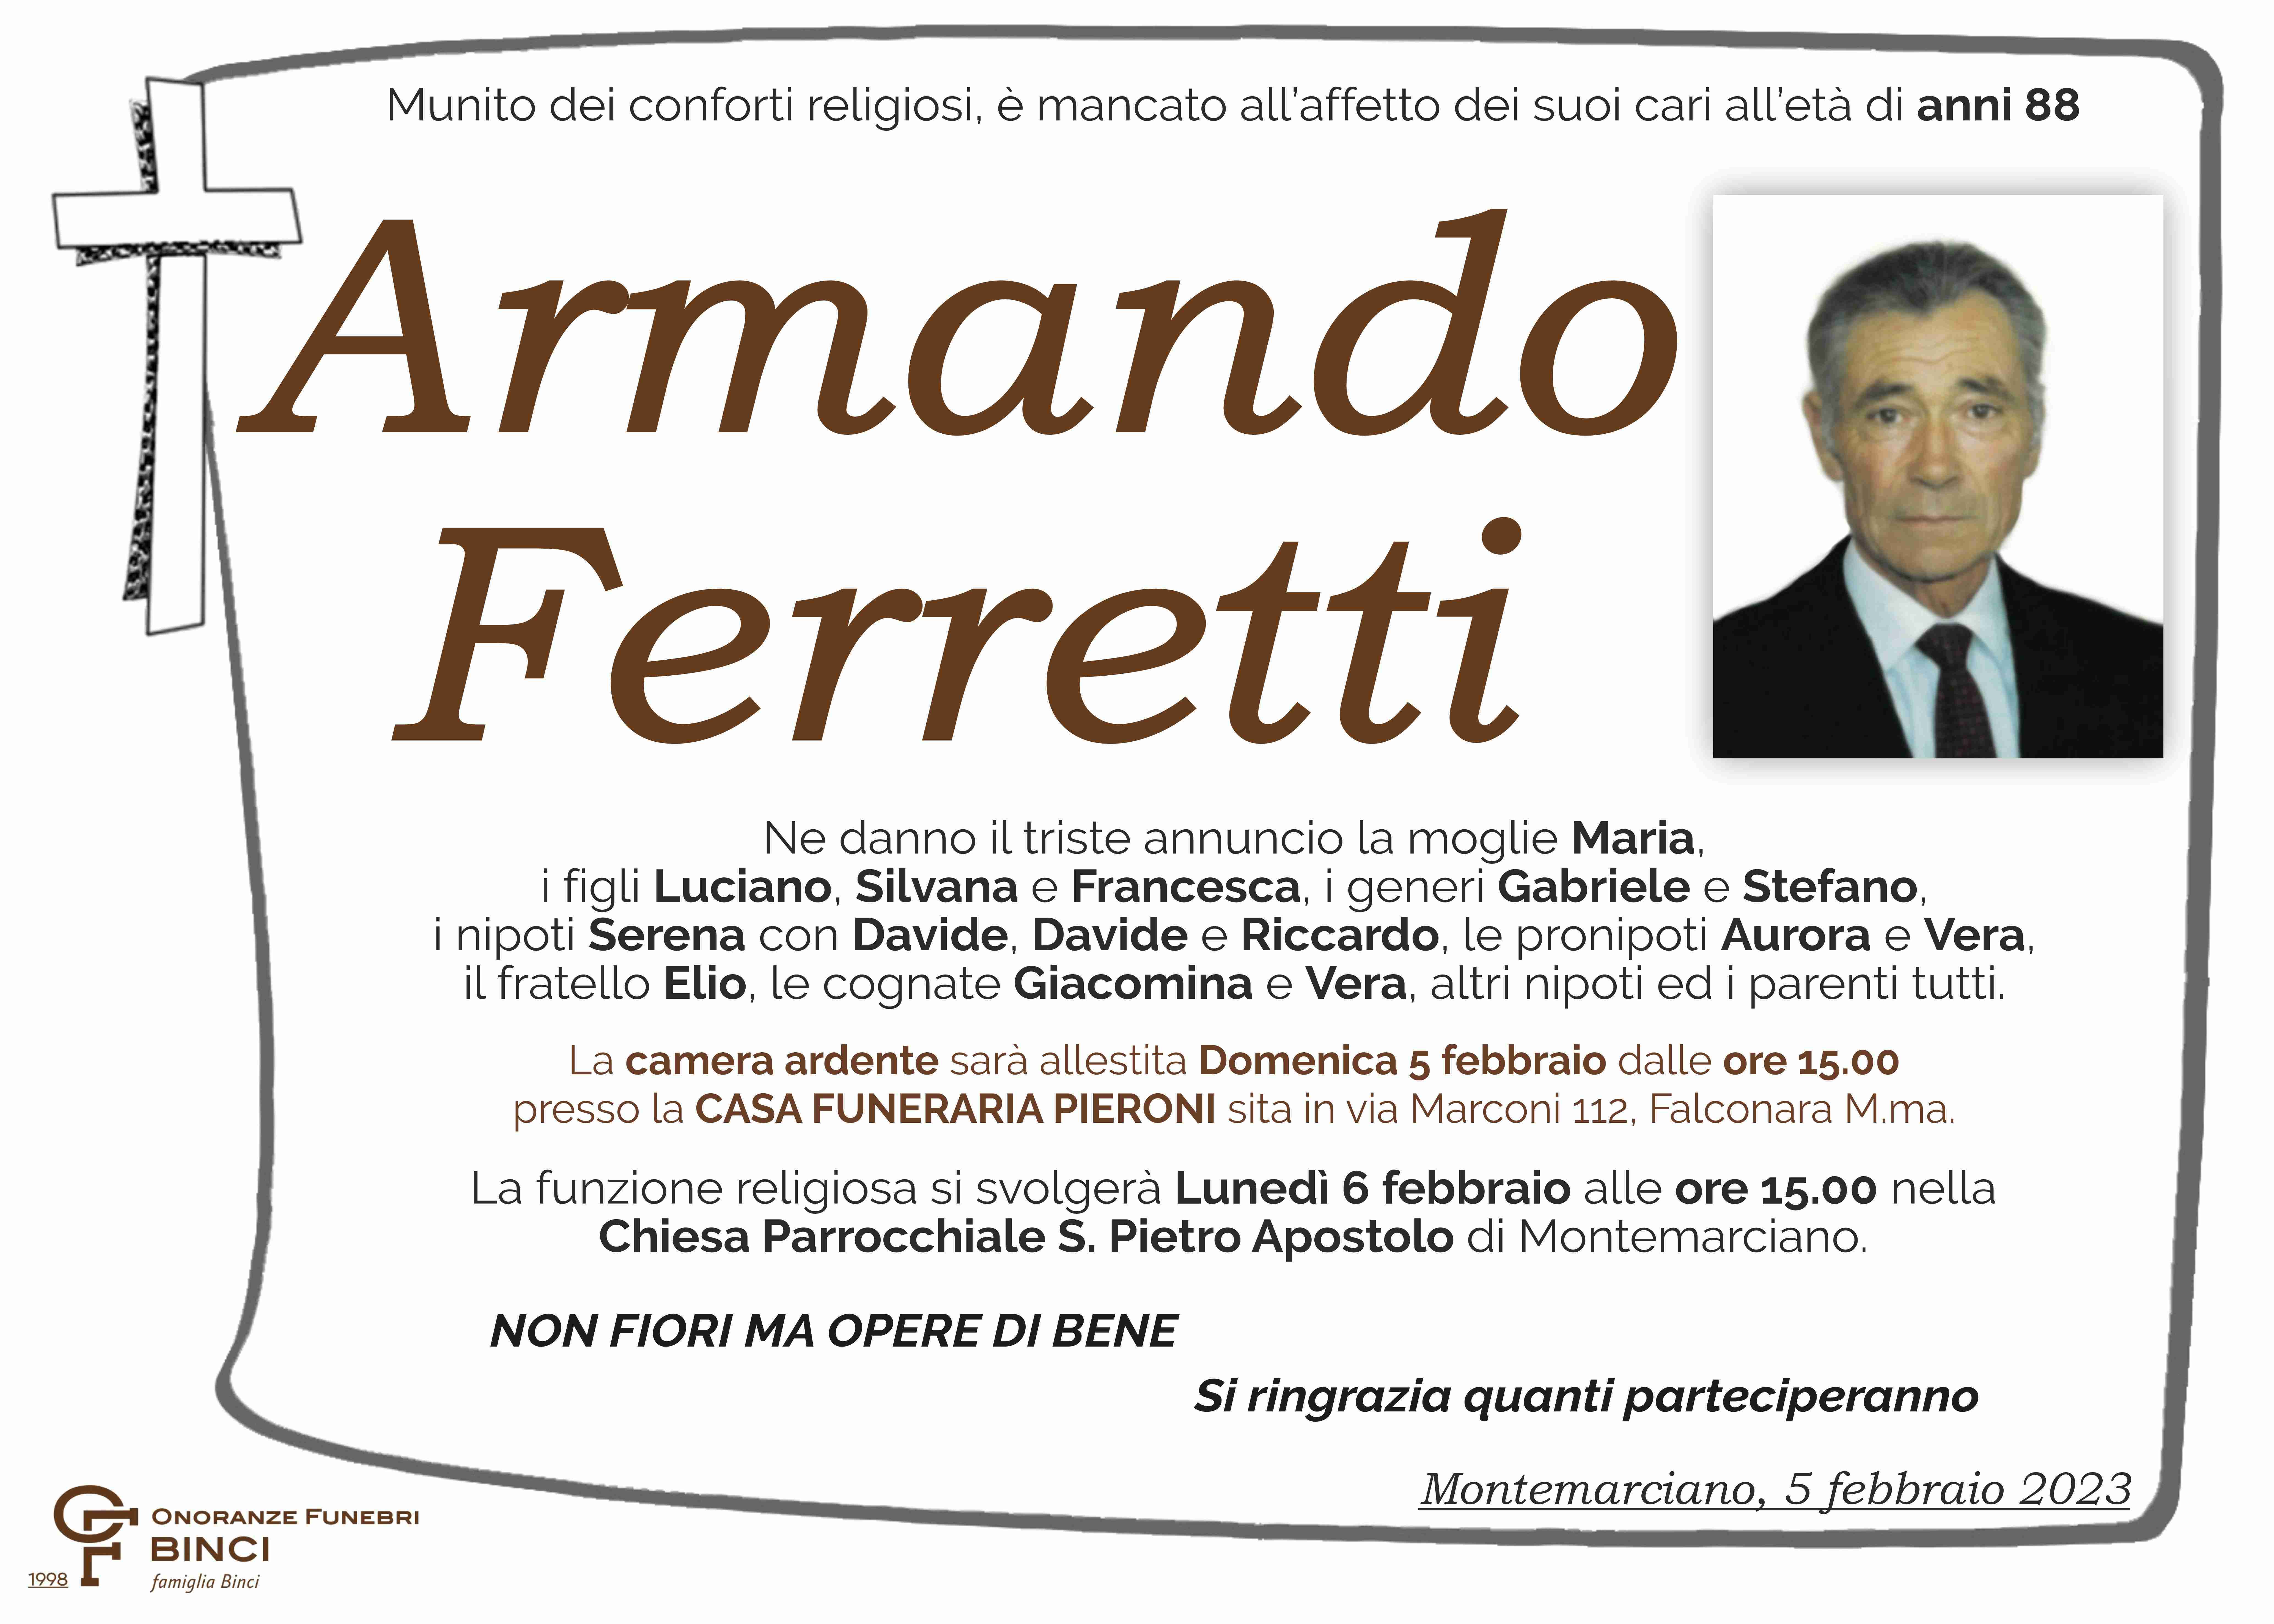 Armando Ferretti